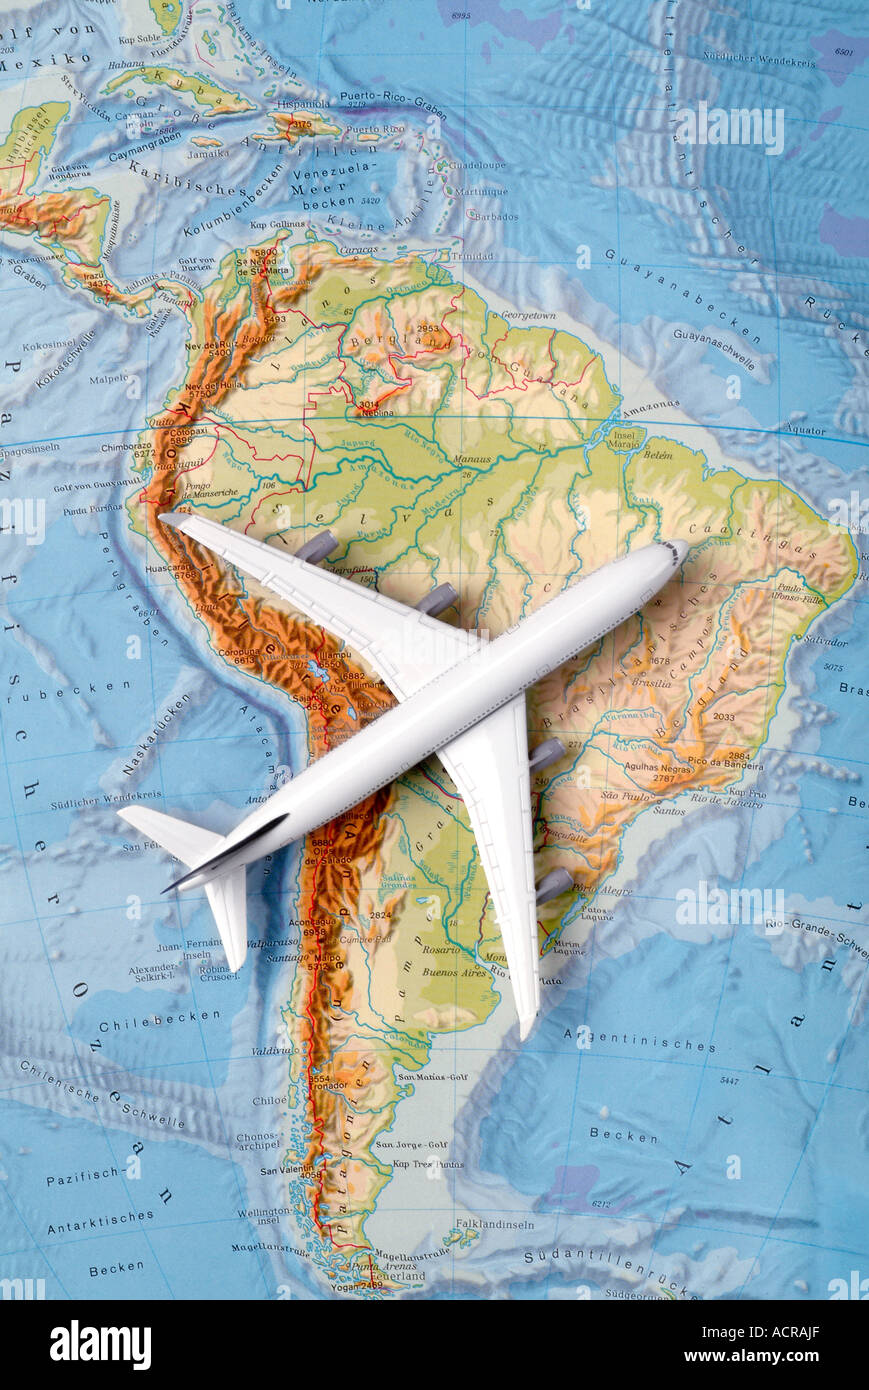 airplane on a map of south america Flugzeug auf einer Karte von Südamerika Stock Photo